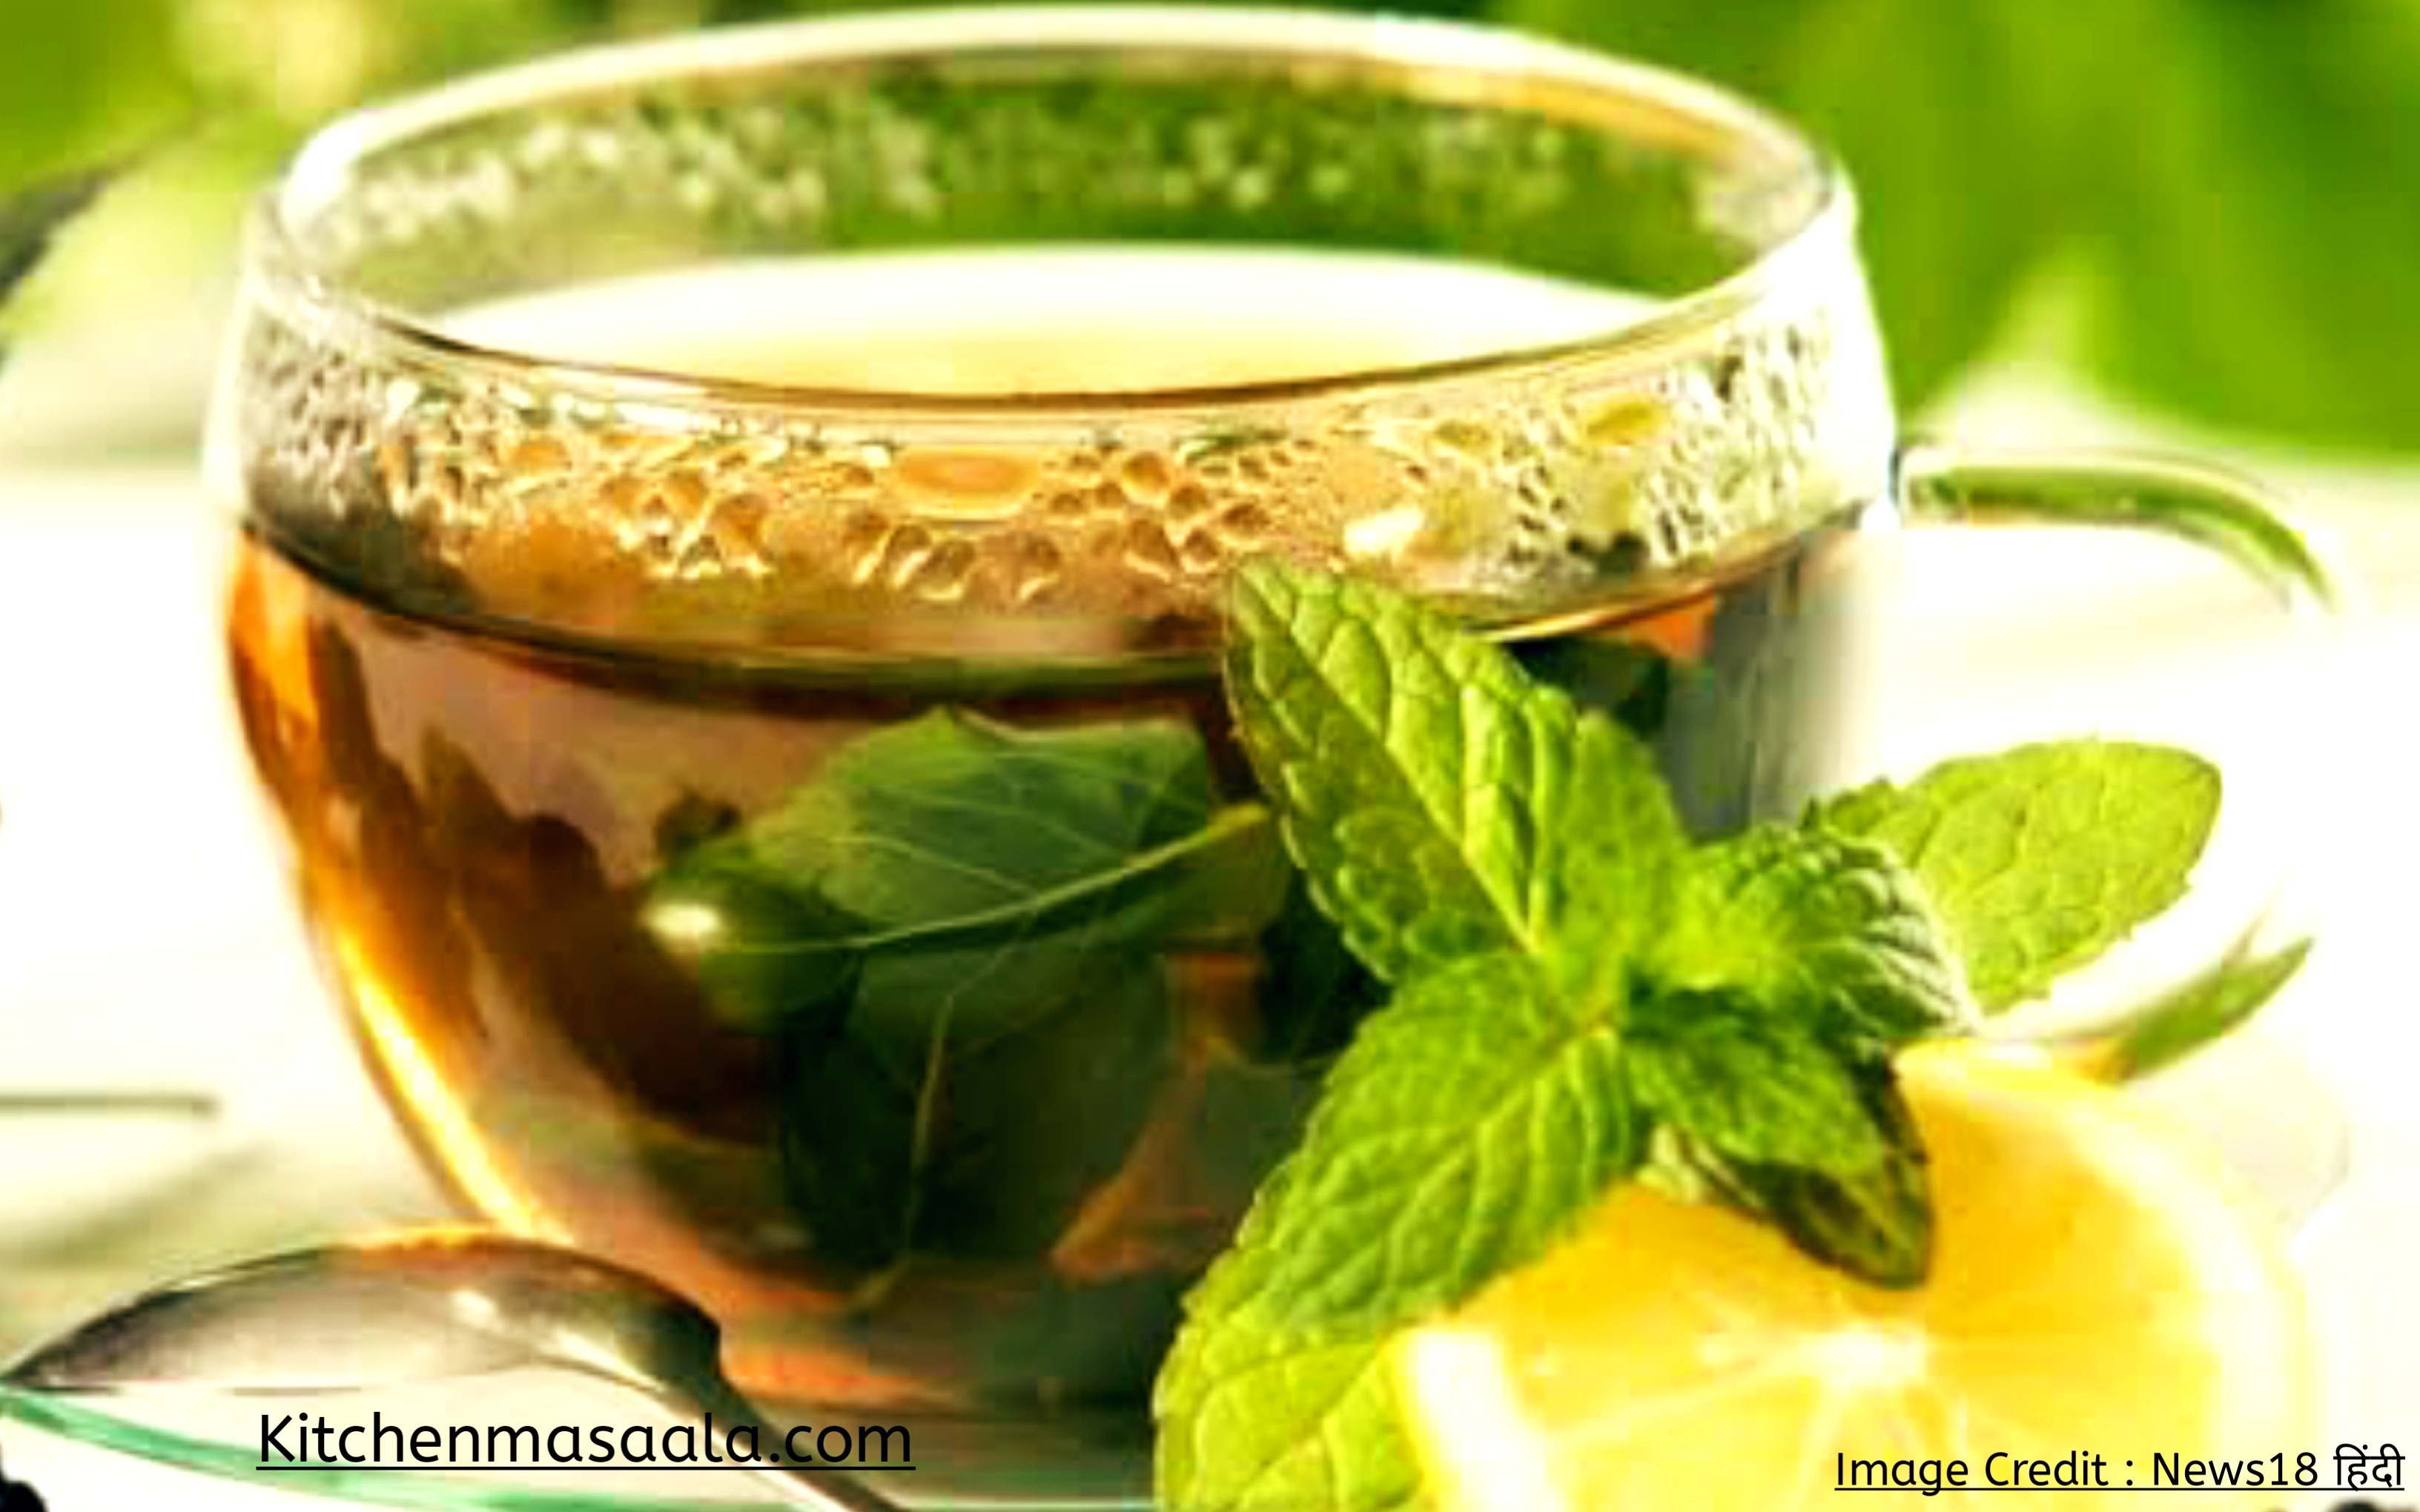 तुलसी ग्रीन टी बनाने की विधि || Tulsi green tea recipe in Hindi